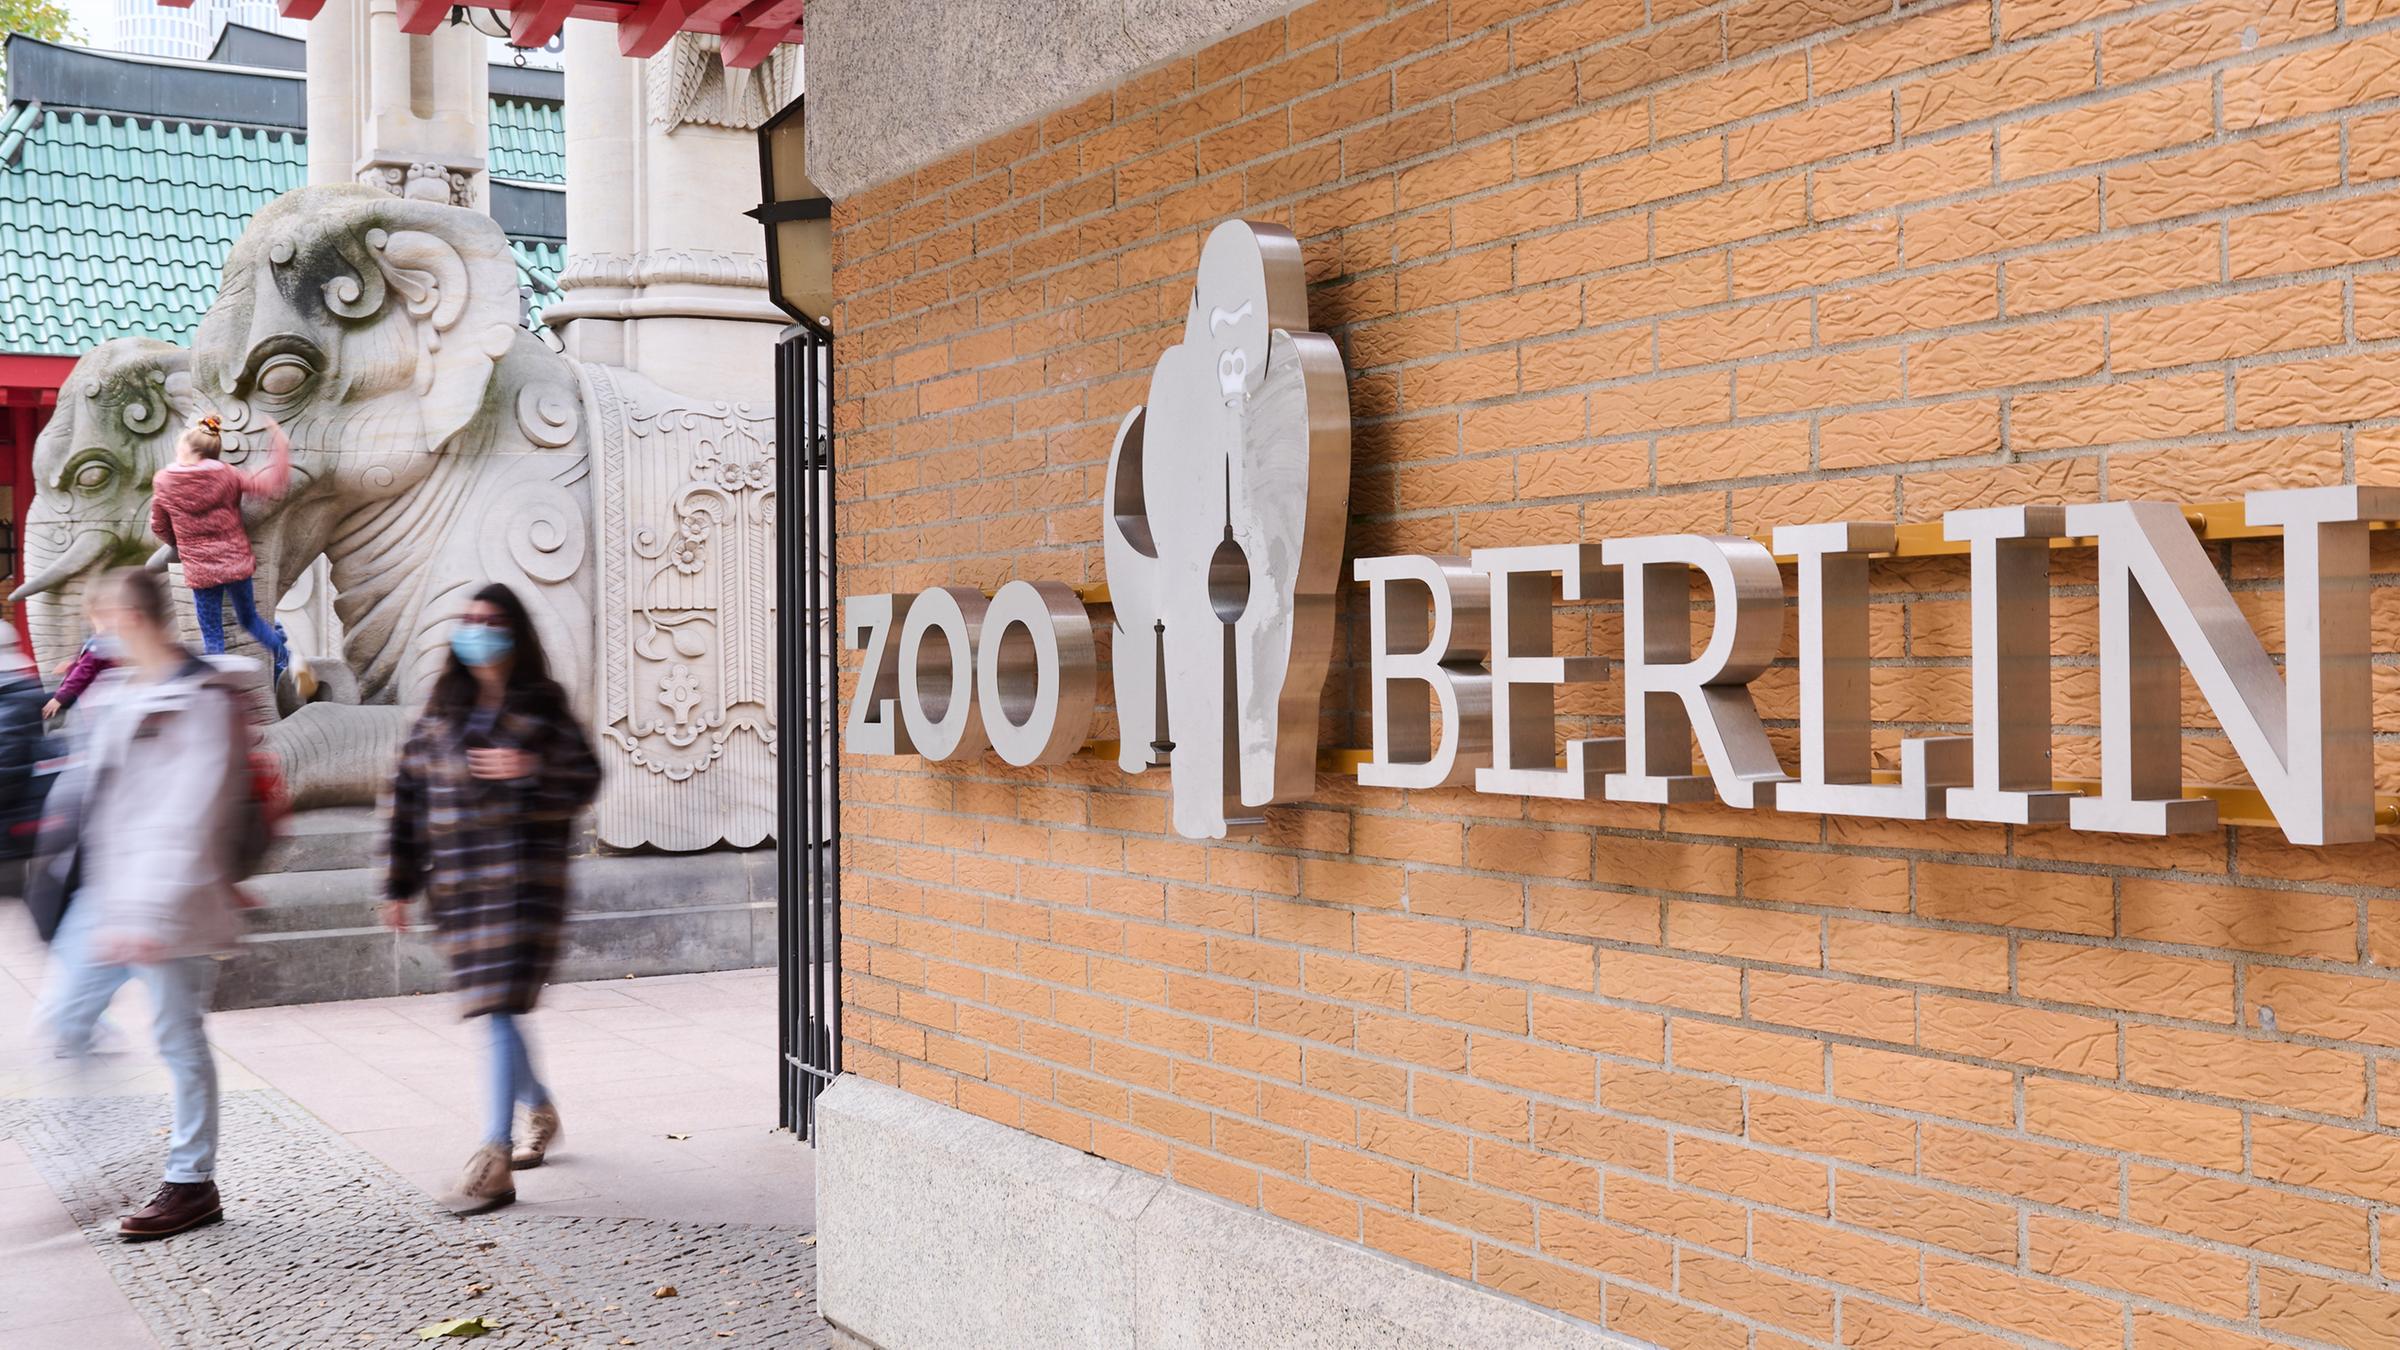 Archiv: Am Eingang des Berliner Zoos laufen Menschen vorbei. 